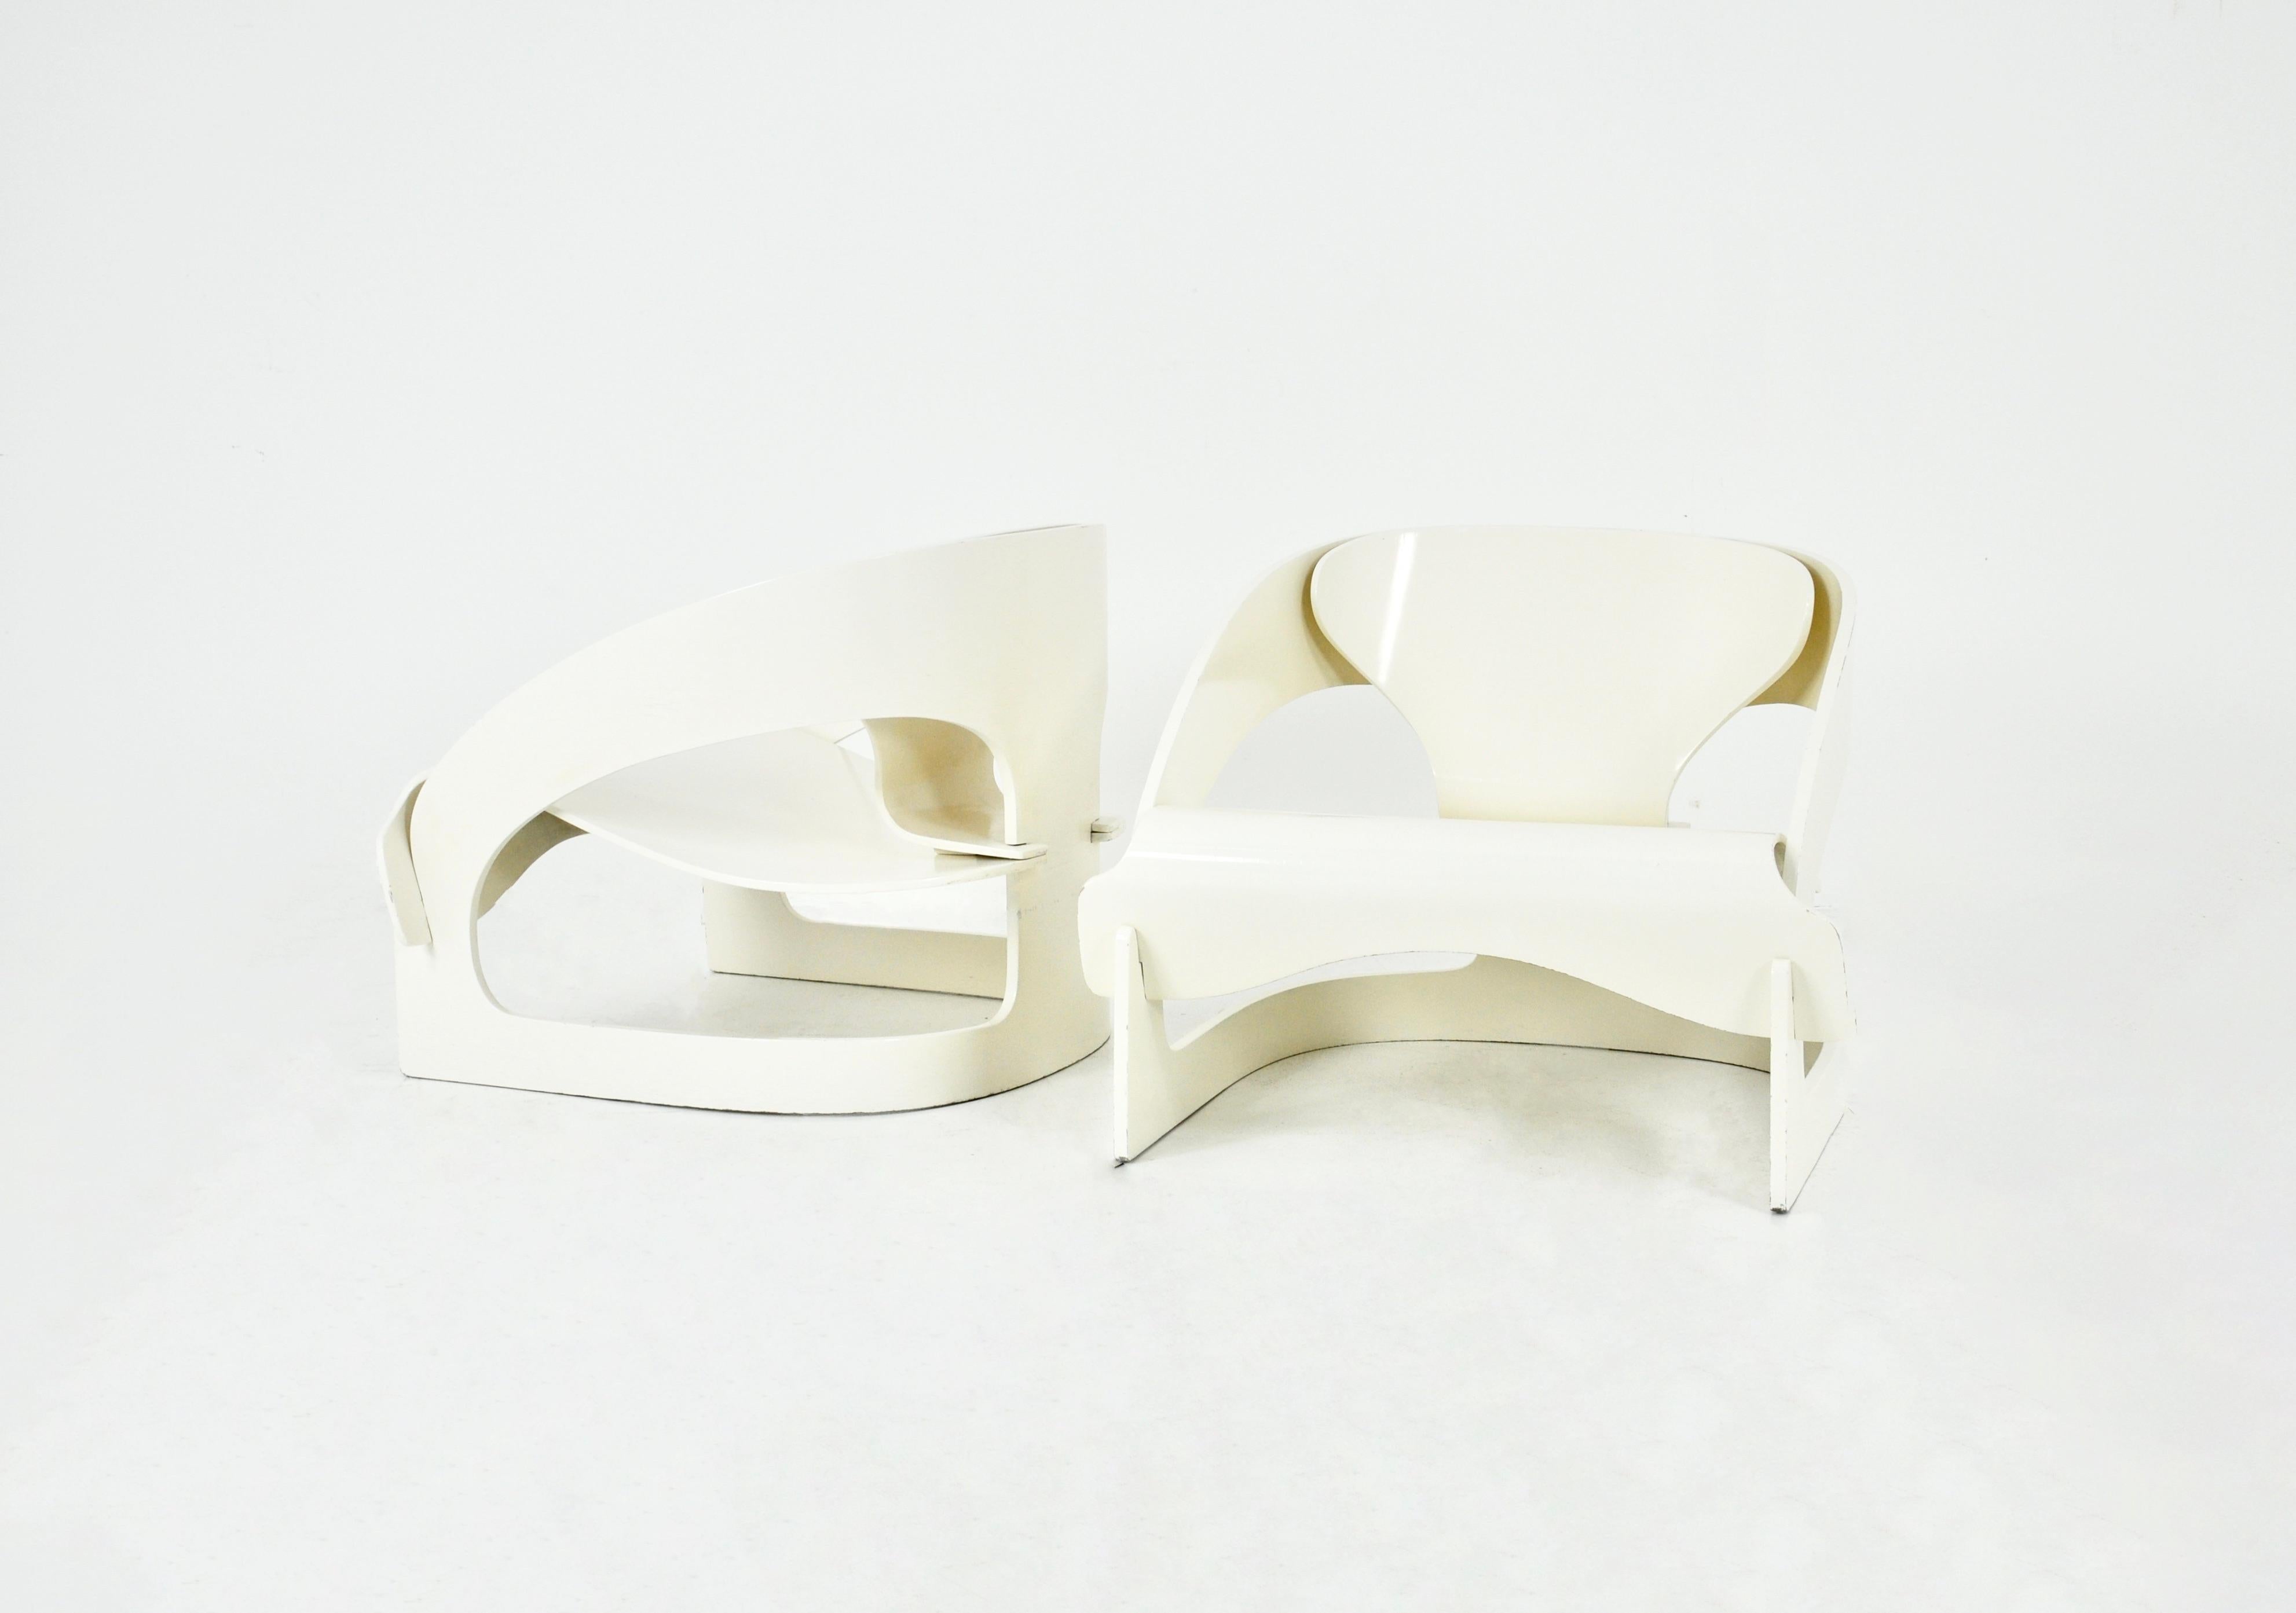 Satz von 2 weißen Holzsesseln, entworfen von Joe Colombo, Modell 4801.  Nummeriert 16. Sitzhöhe 34 cm. Zeit- und altersbedingte Abnutzung.